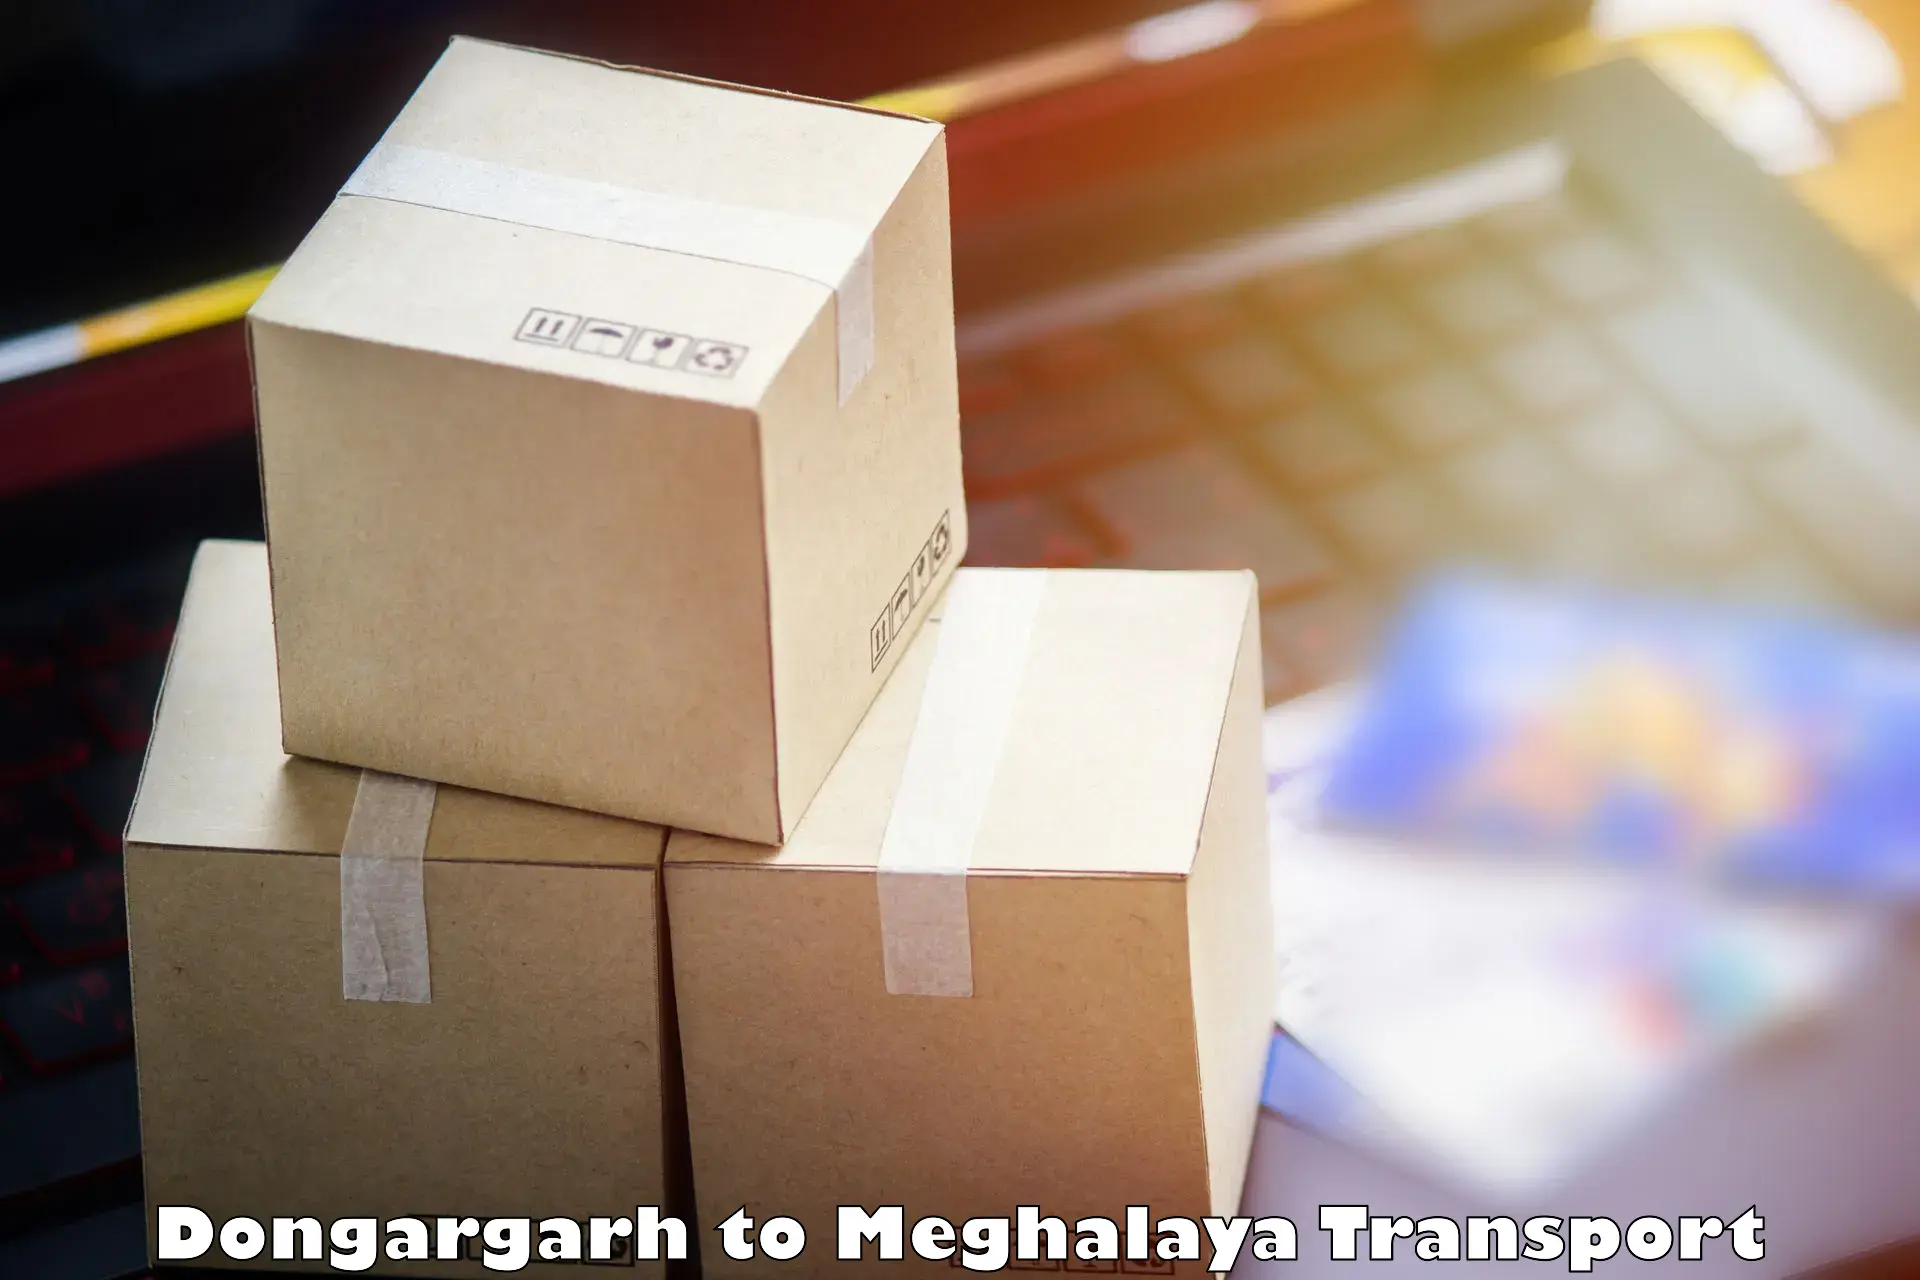 Shipping partner Dongargarh to Dkhiah West